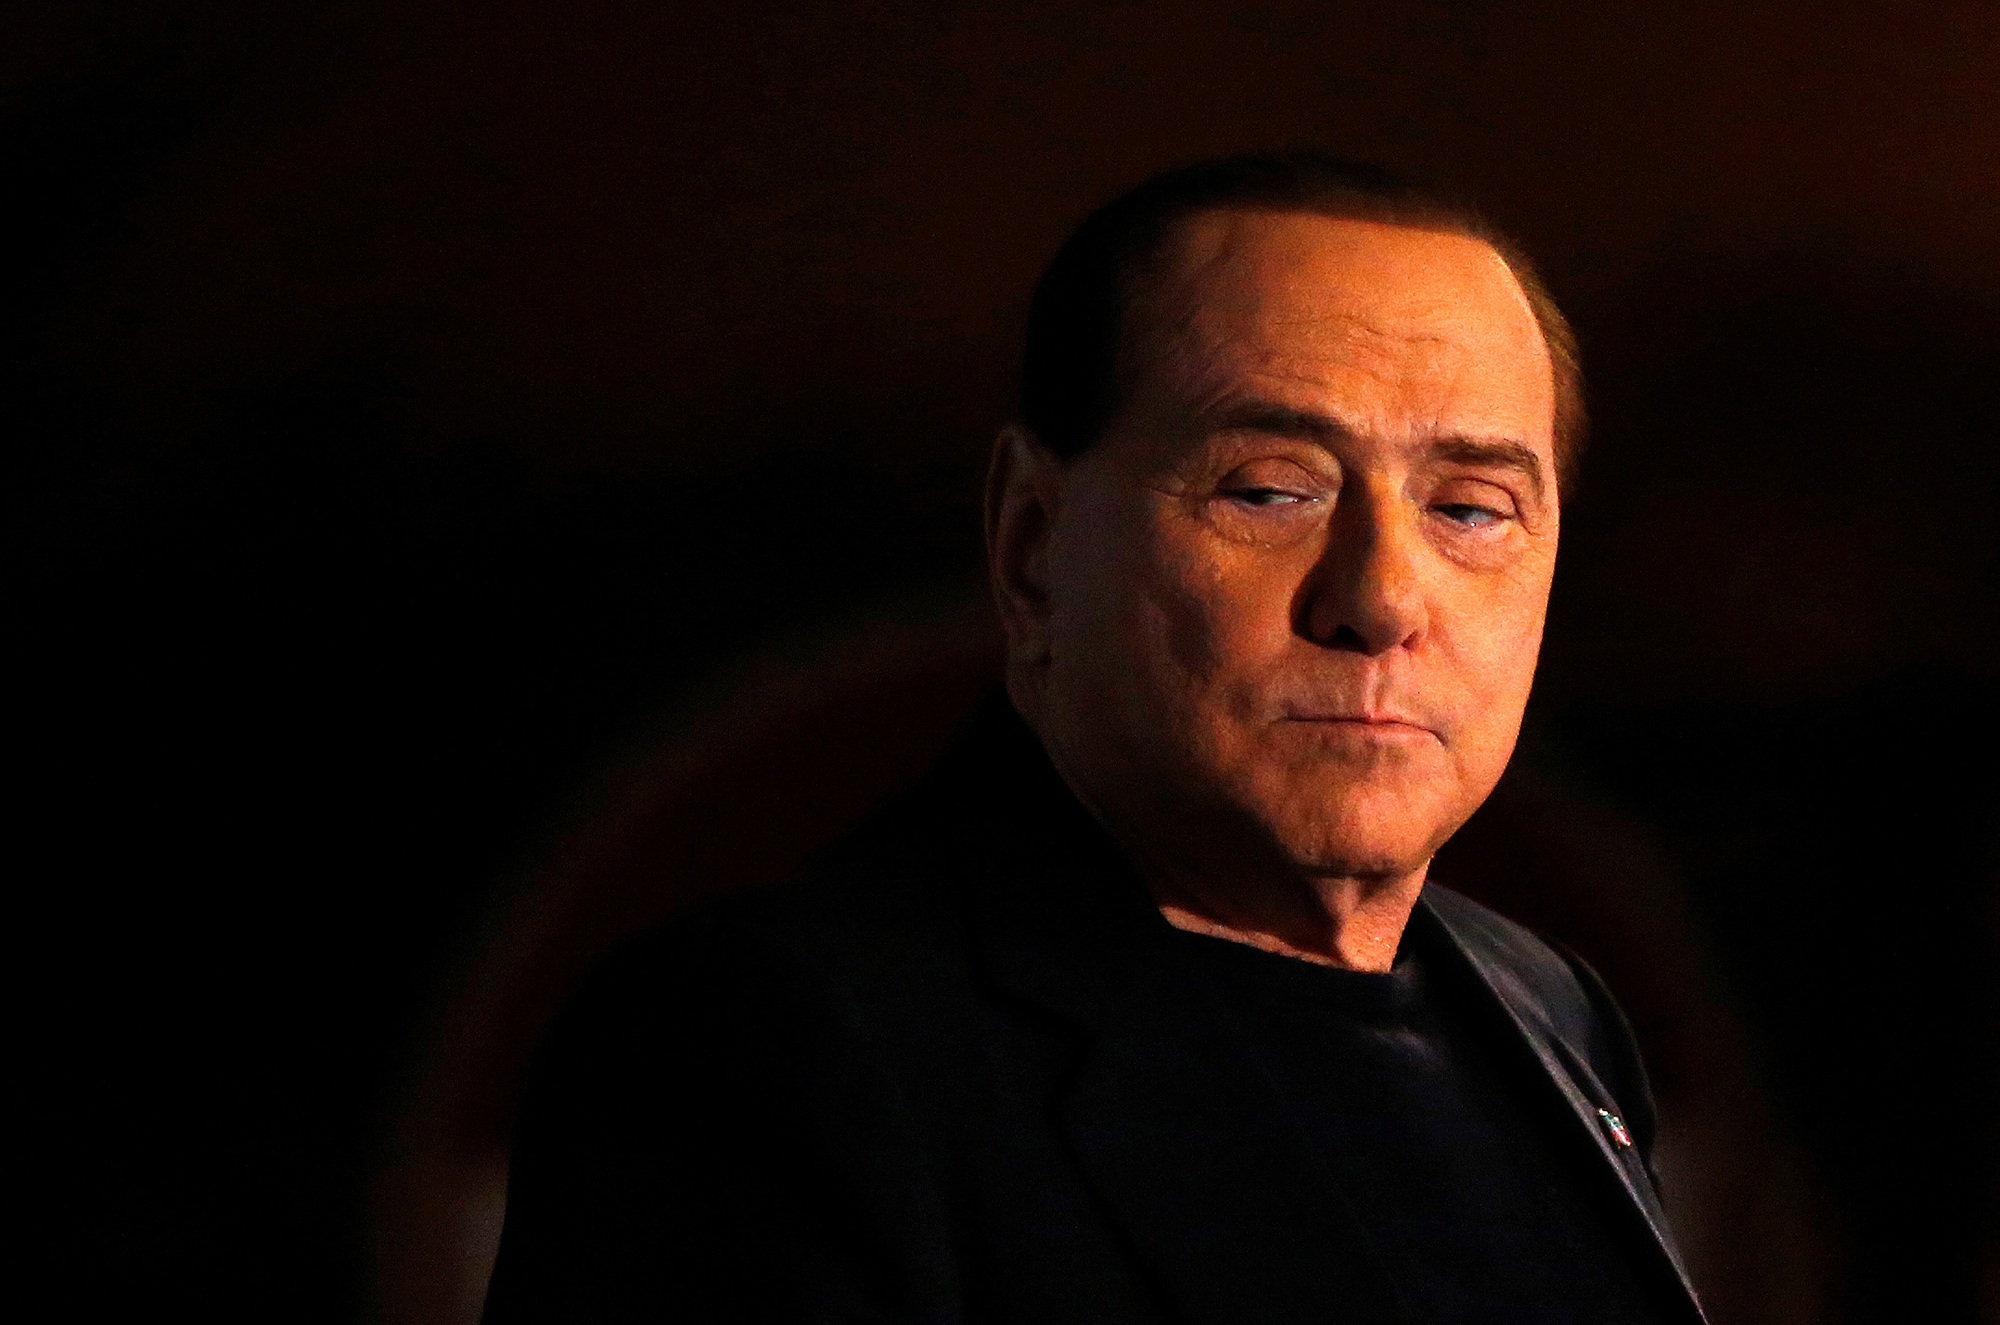 Cựu thủ tướng Silvio Berlusconi qua đời - Ảnh 1.